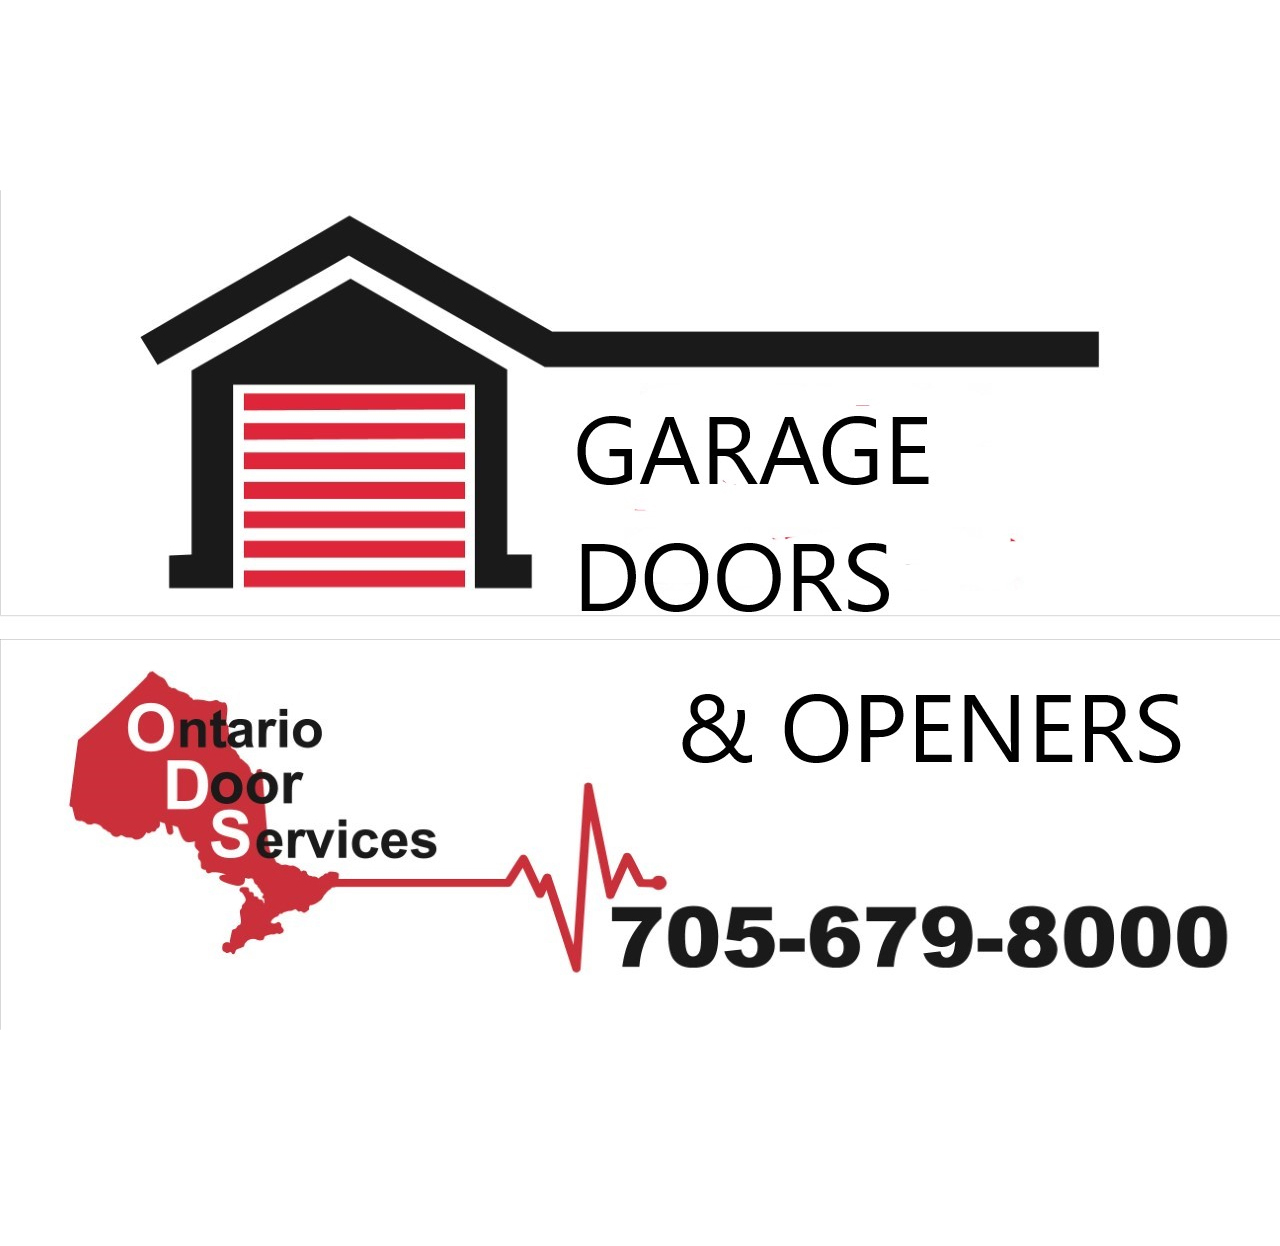 Ontario Door Services - 14178602 Canada INC